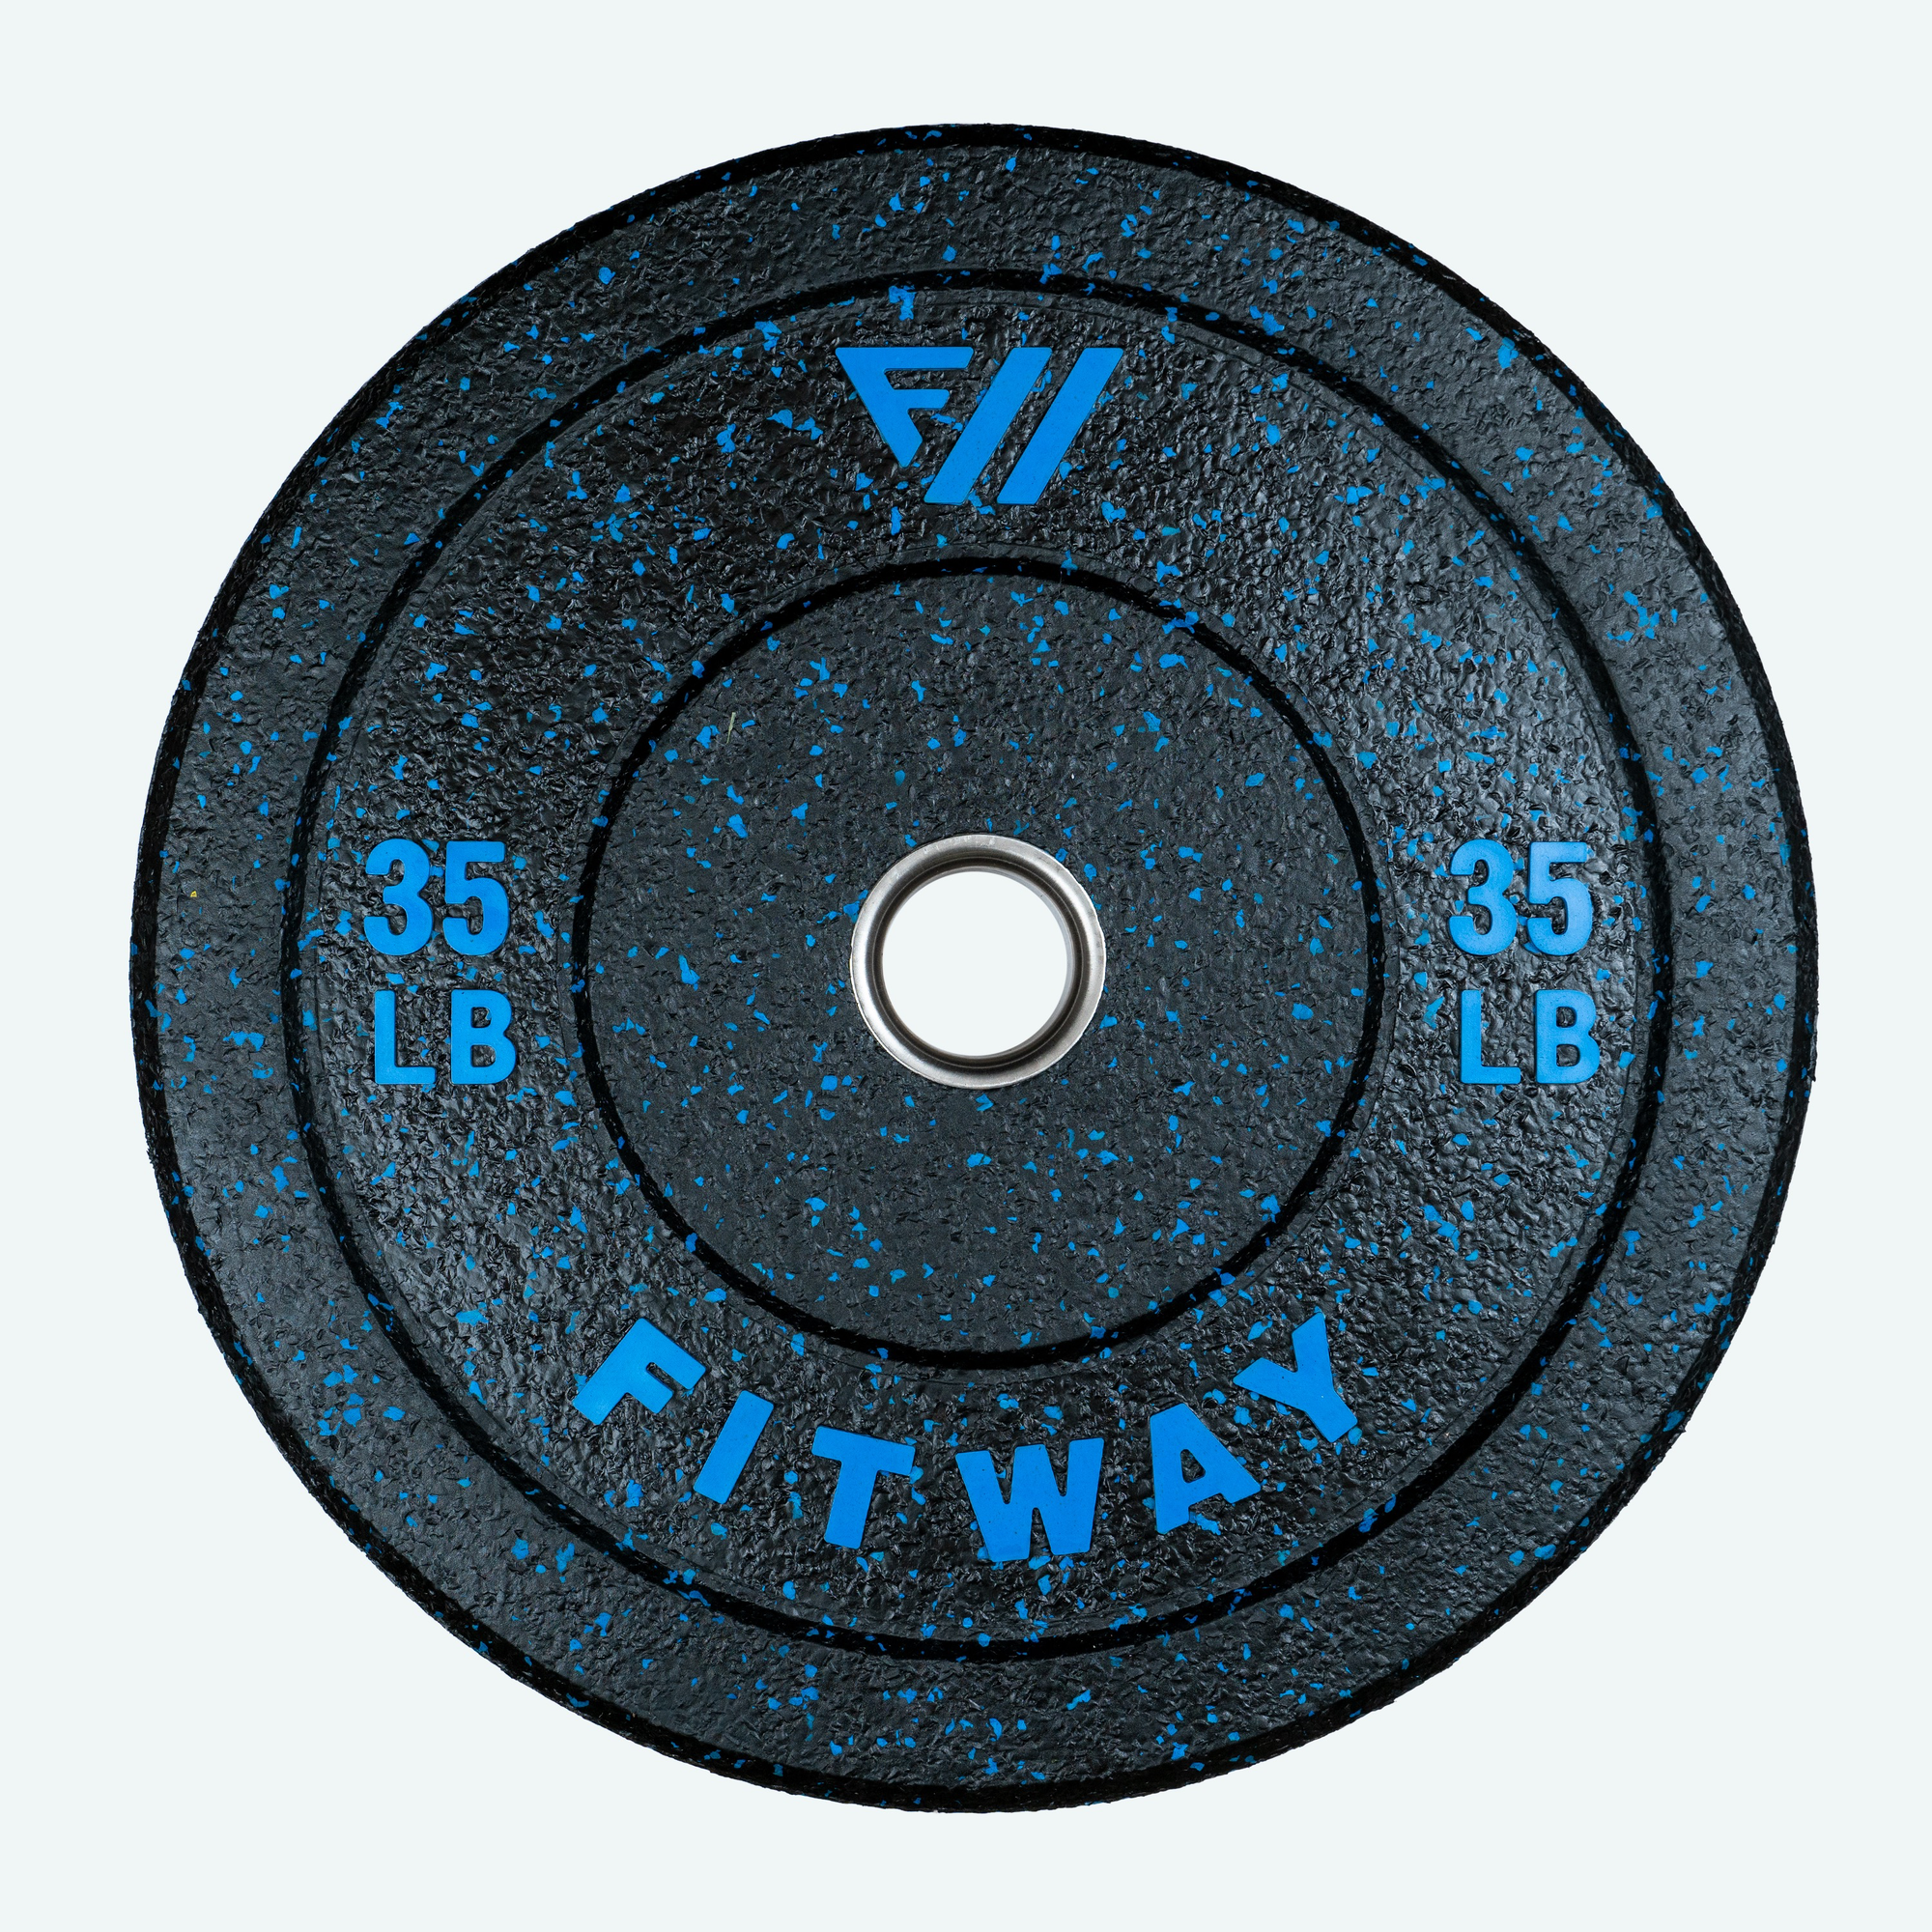 FitWay Equip. Hi-Temp Bumper Plate - 35lb 